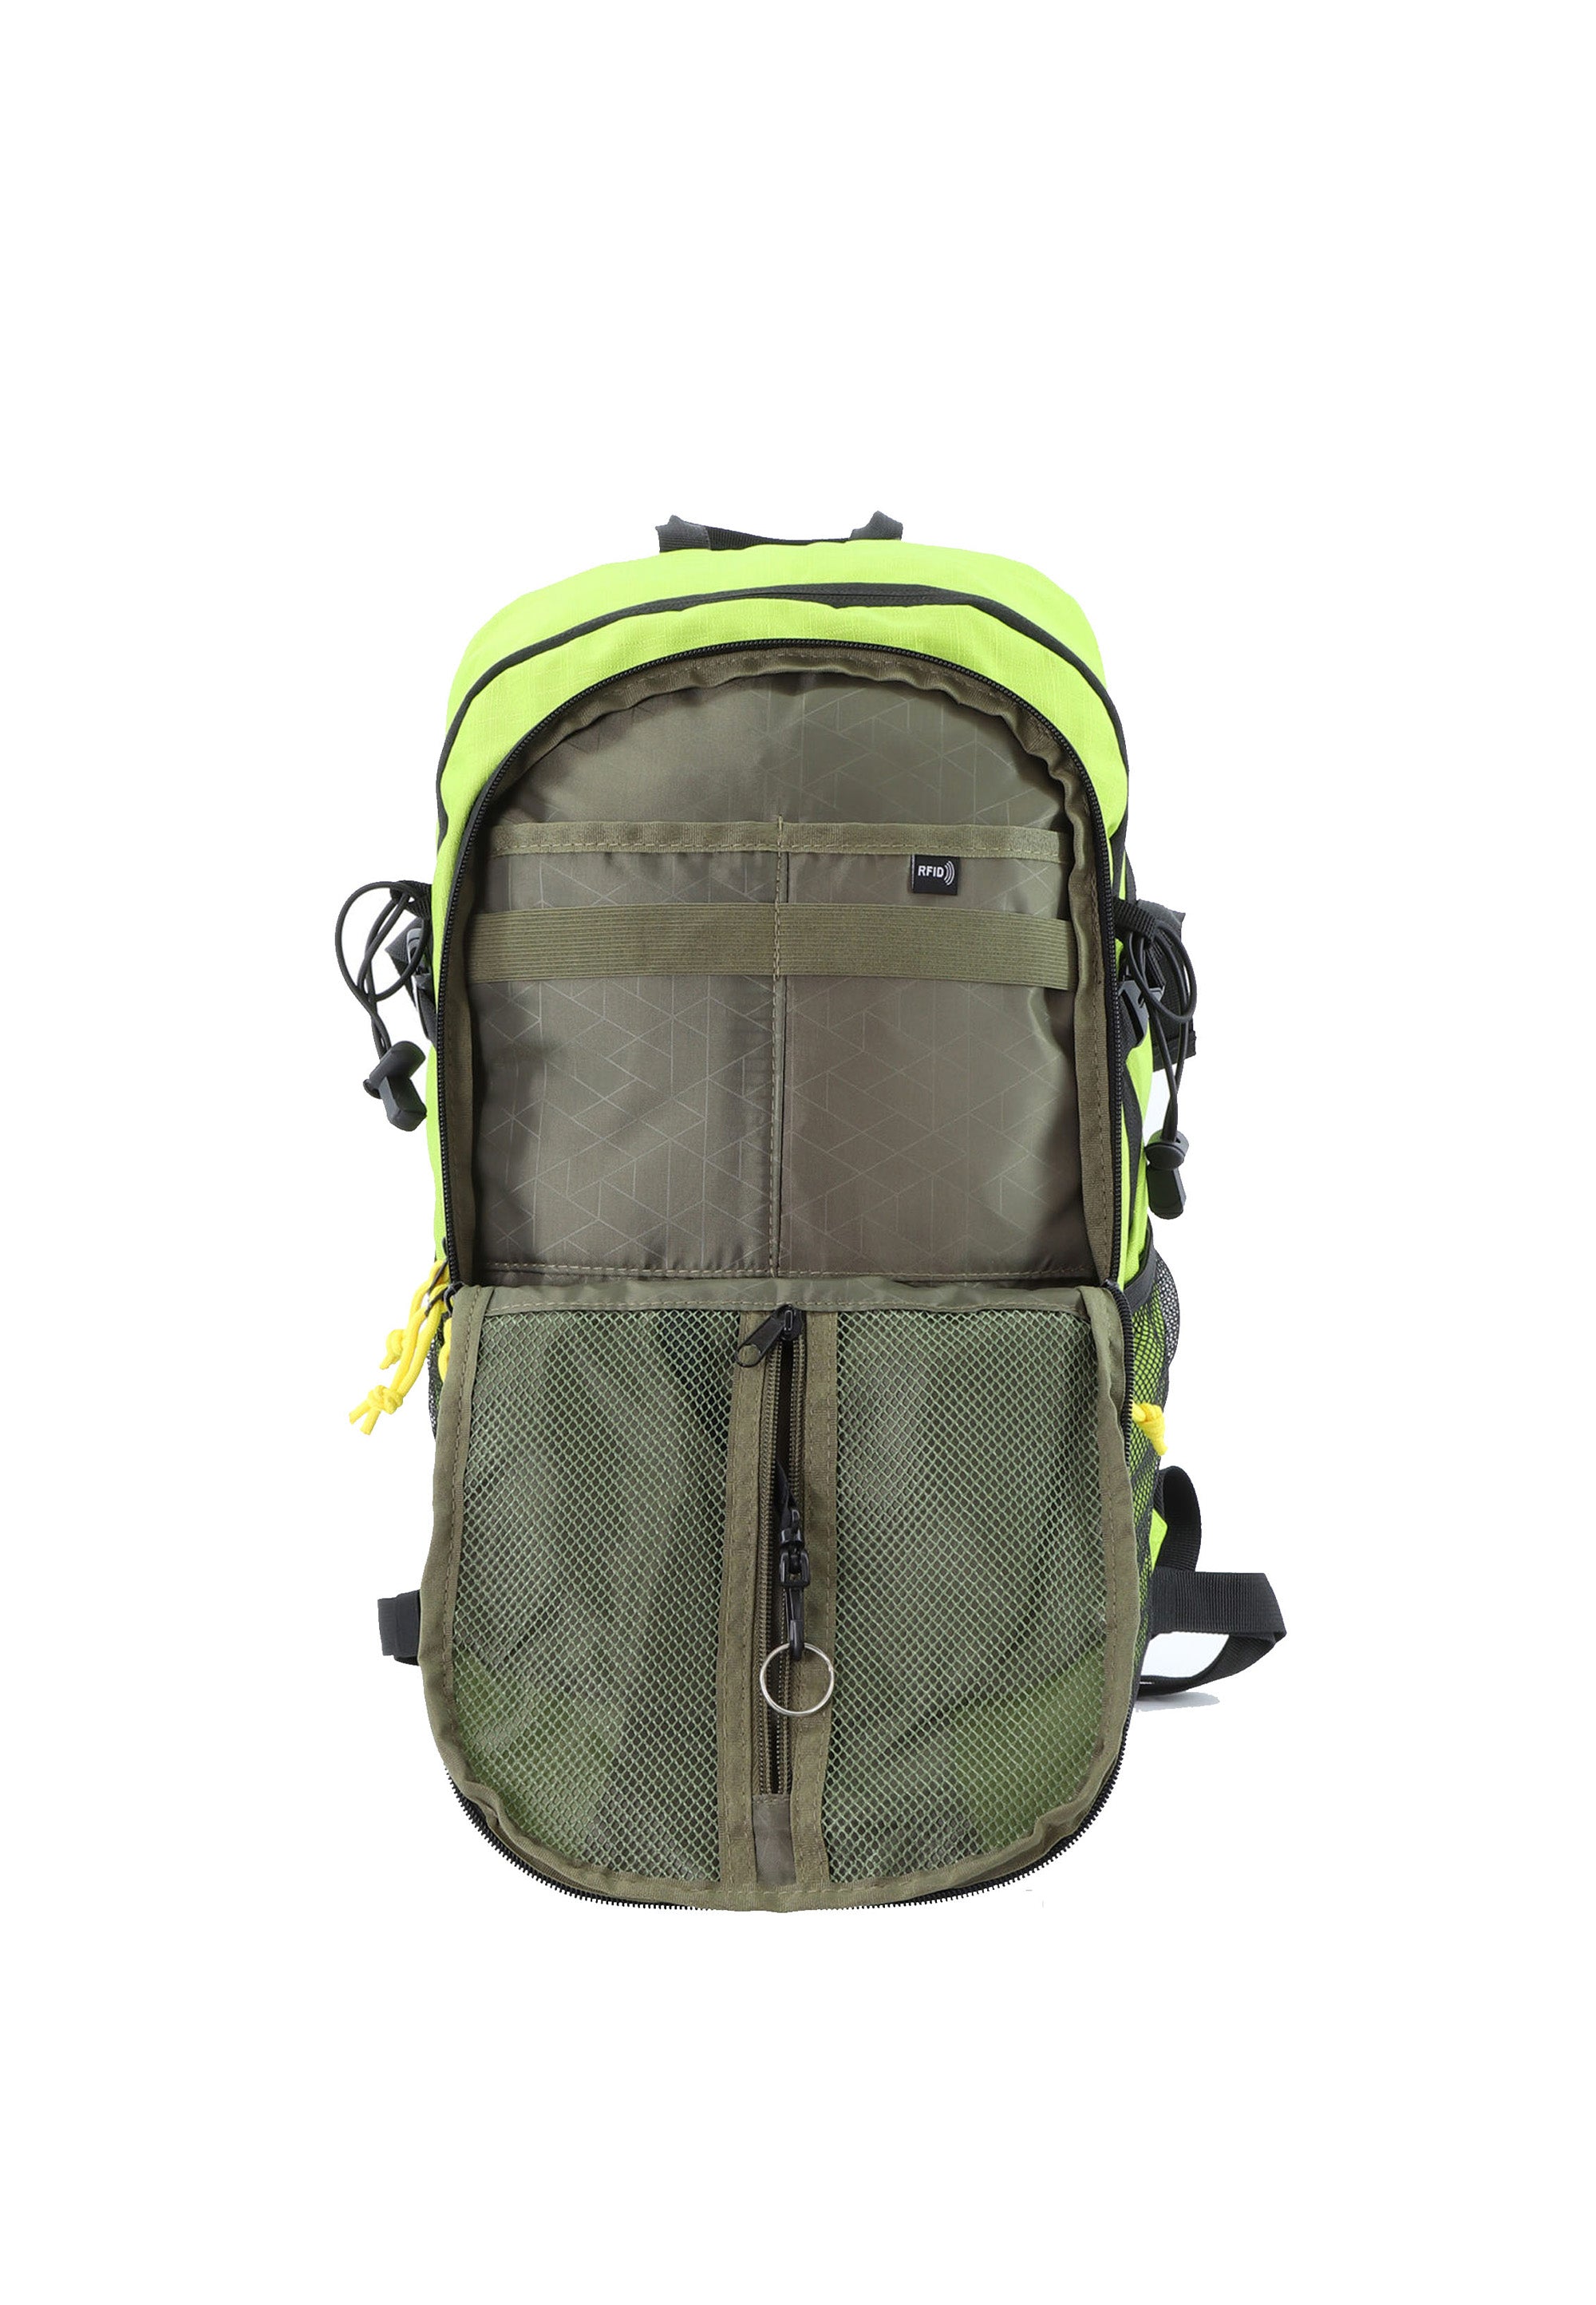 National Geographic - Destination | Outdoor Rucksack mit RFID-Blocker (48cm) | Grün